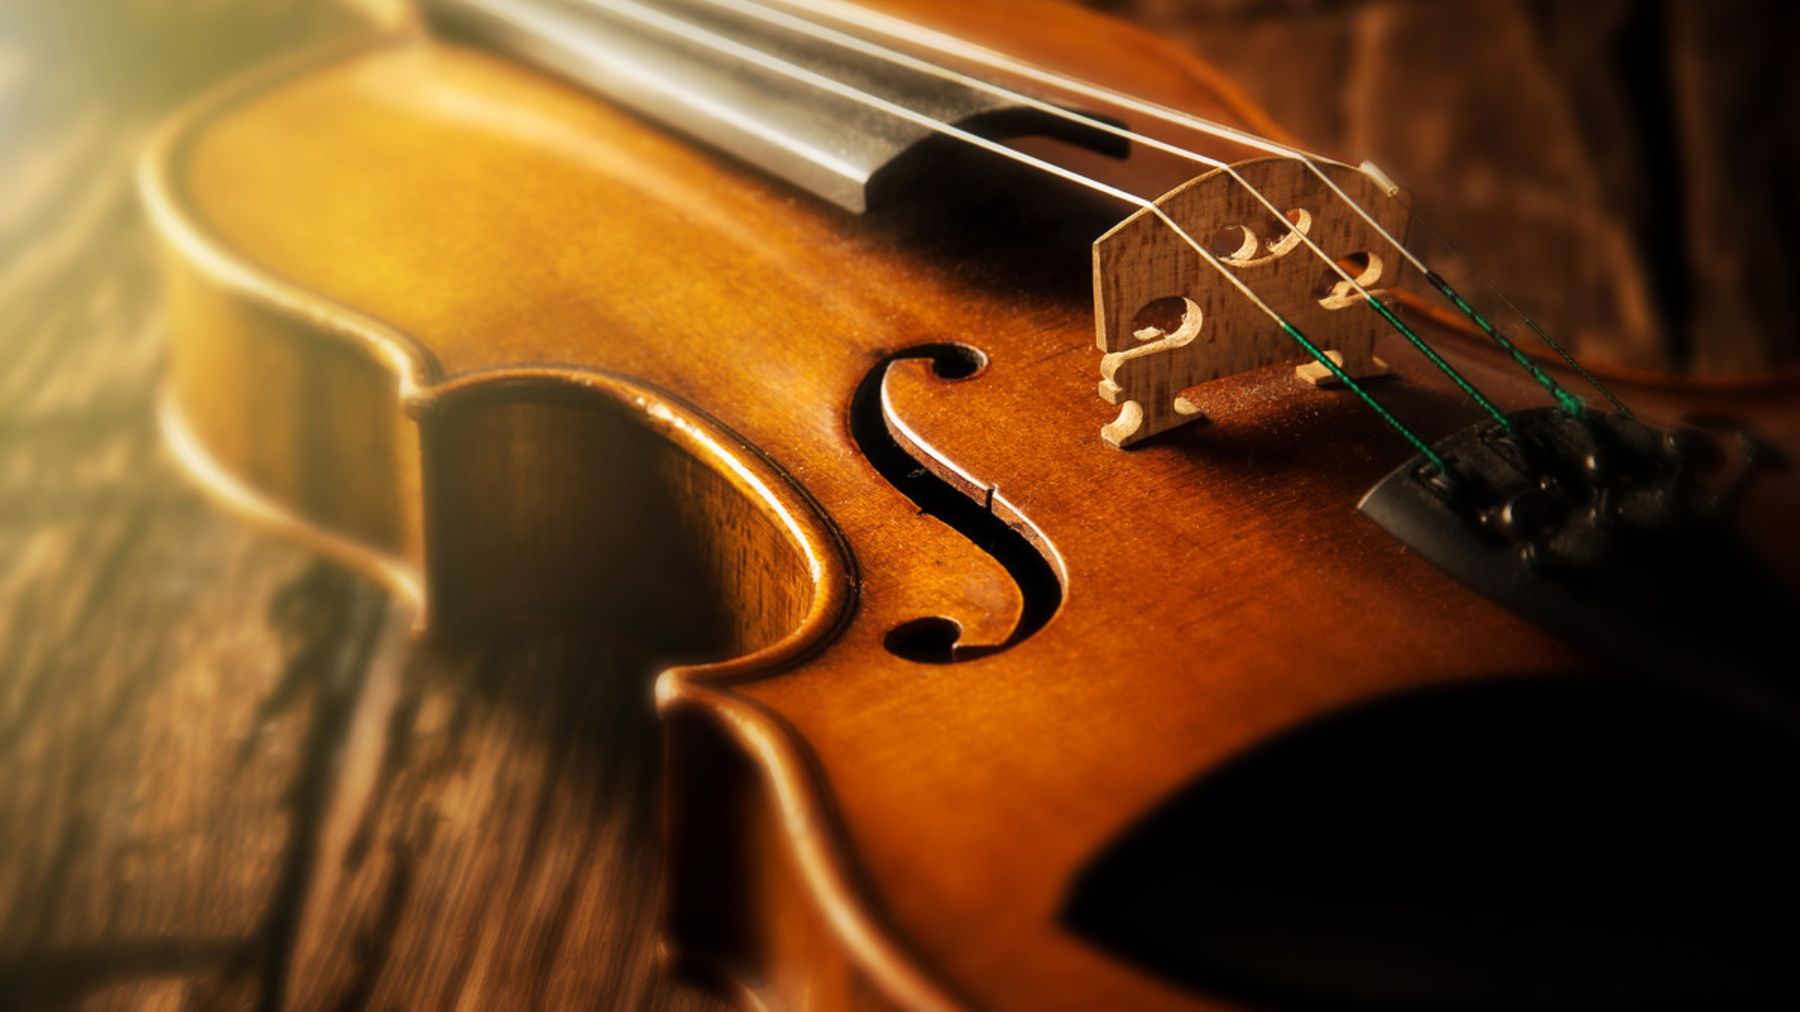 El sonido los violines Stradivarius es único debido a un tratamiento químico en su creación.